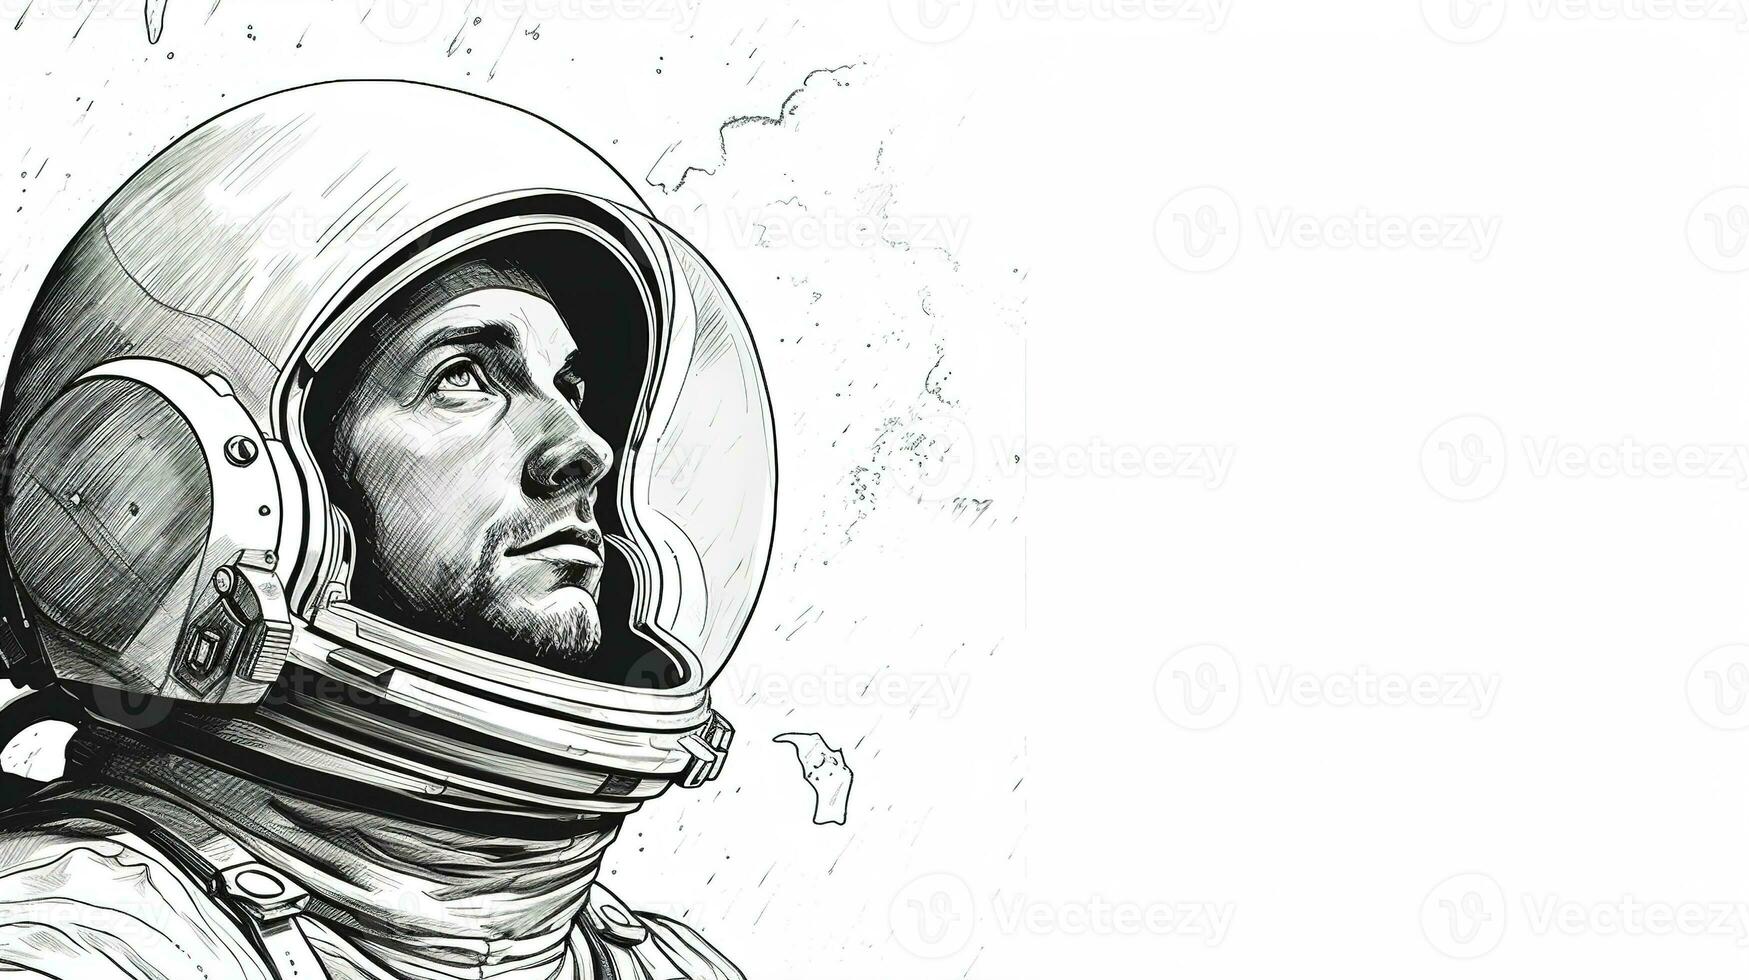 Generative AI, Astronaut in spacesuit, letterpress vintage style photo